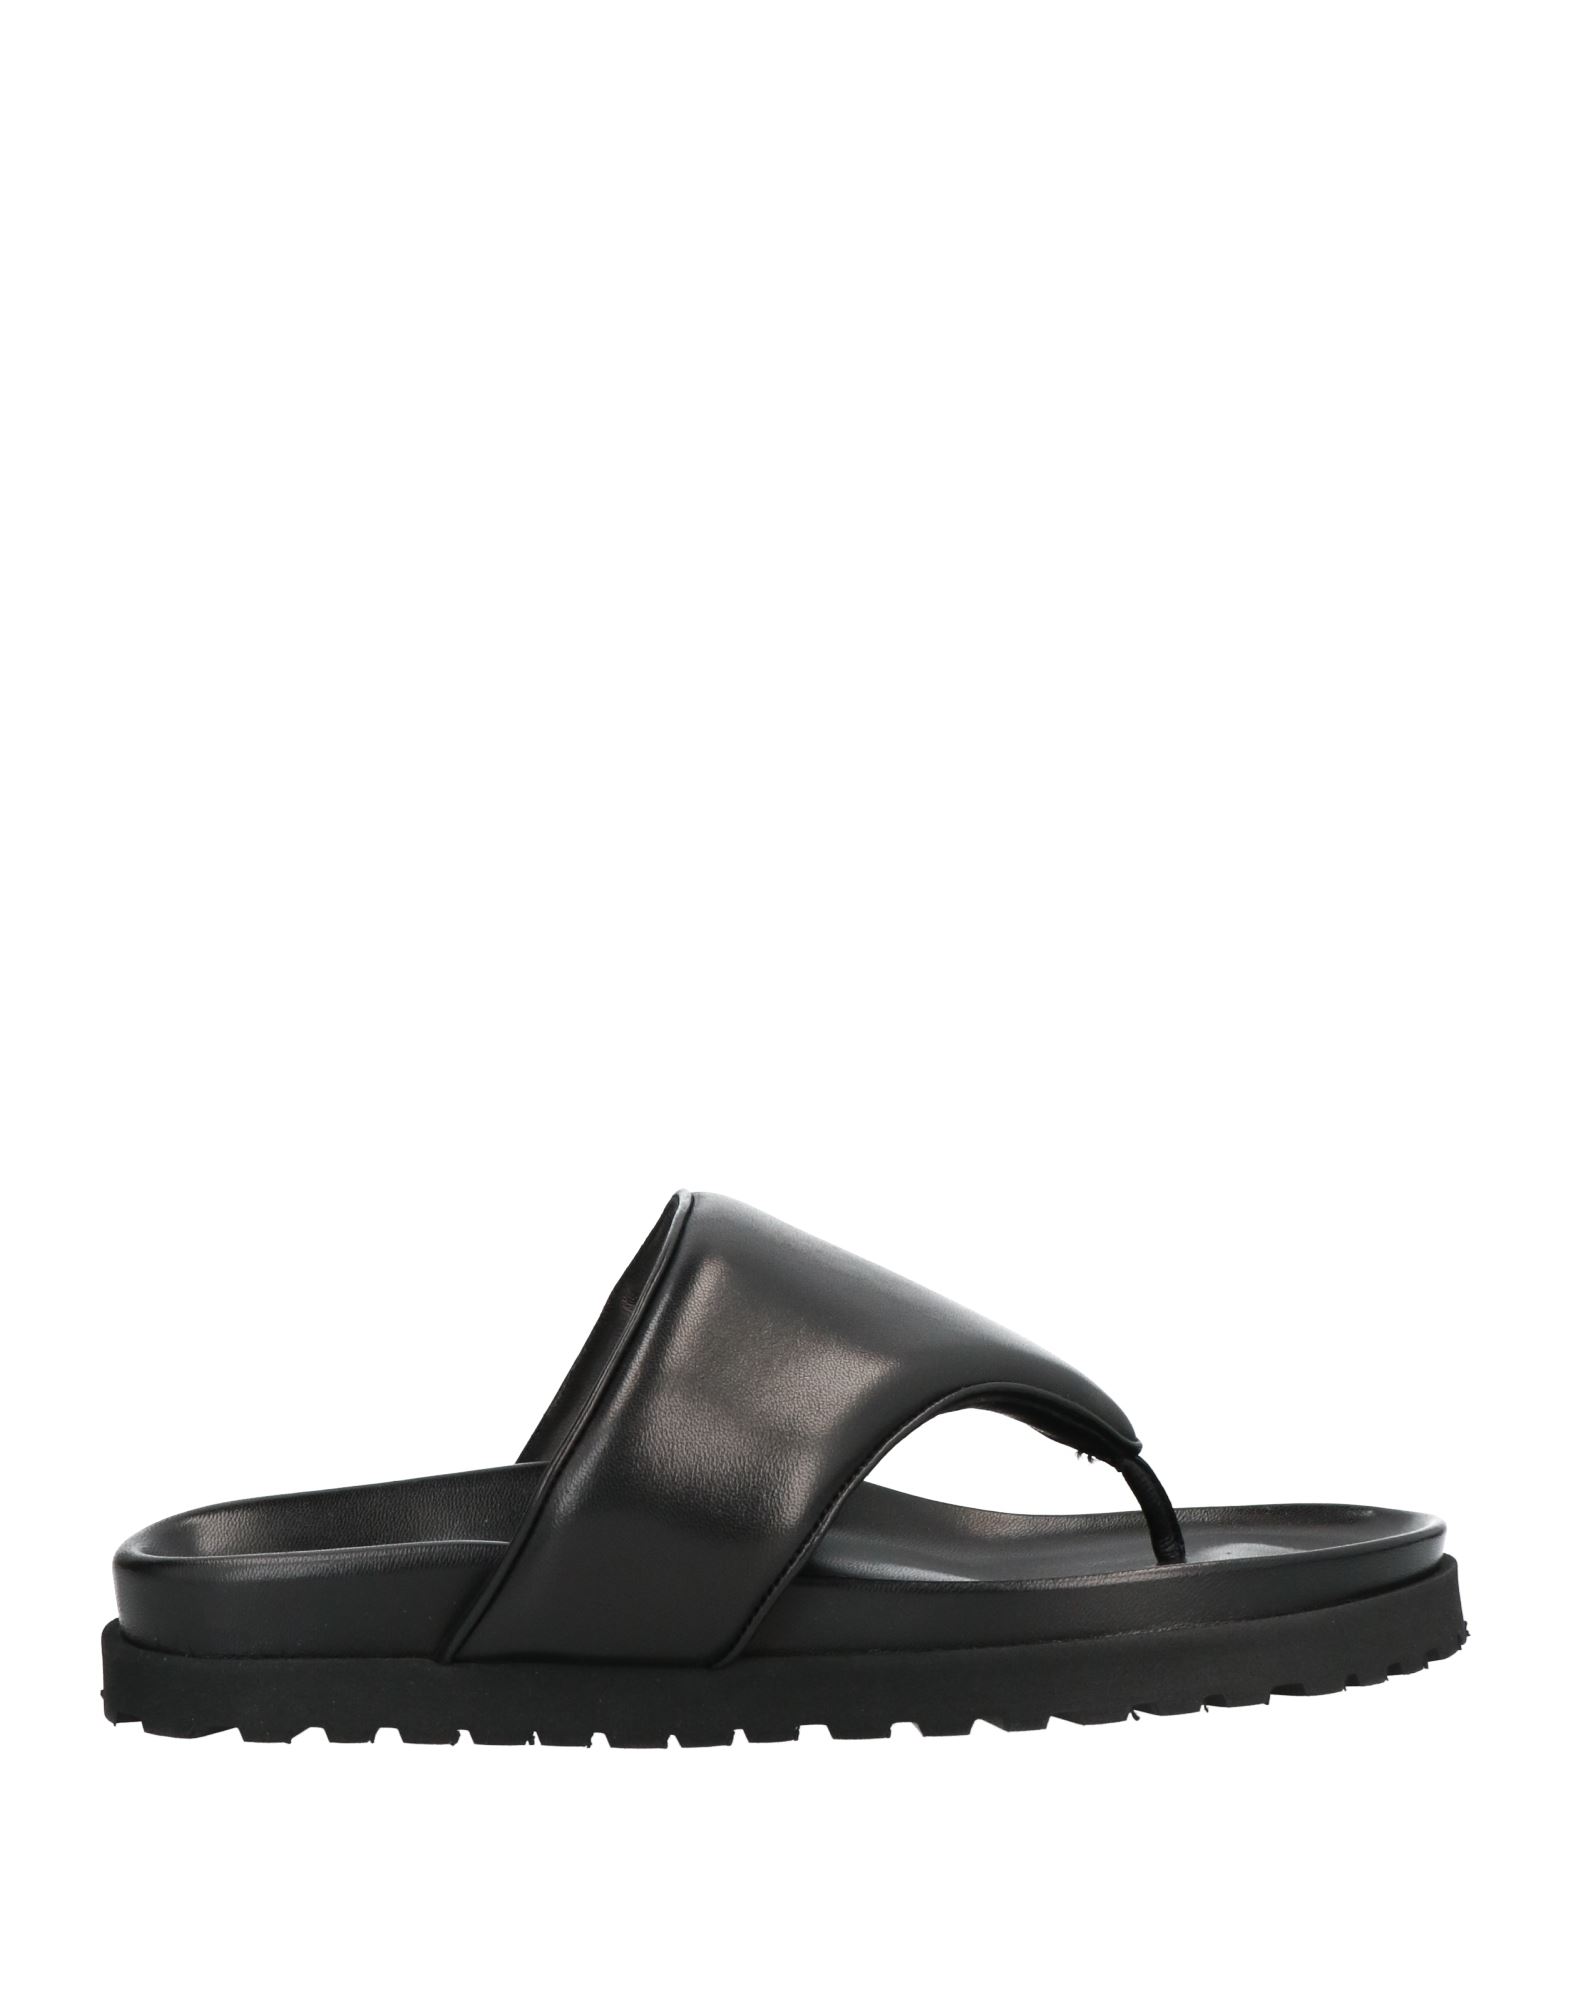 Gia X Pernille Teisbaek Toe Strap Sandals In Black